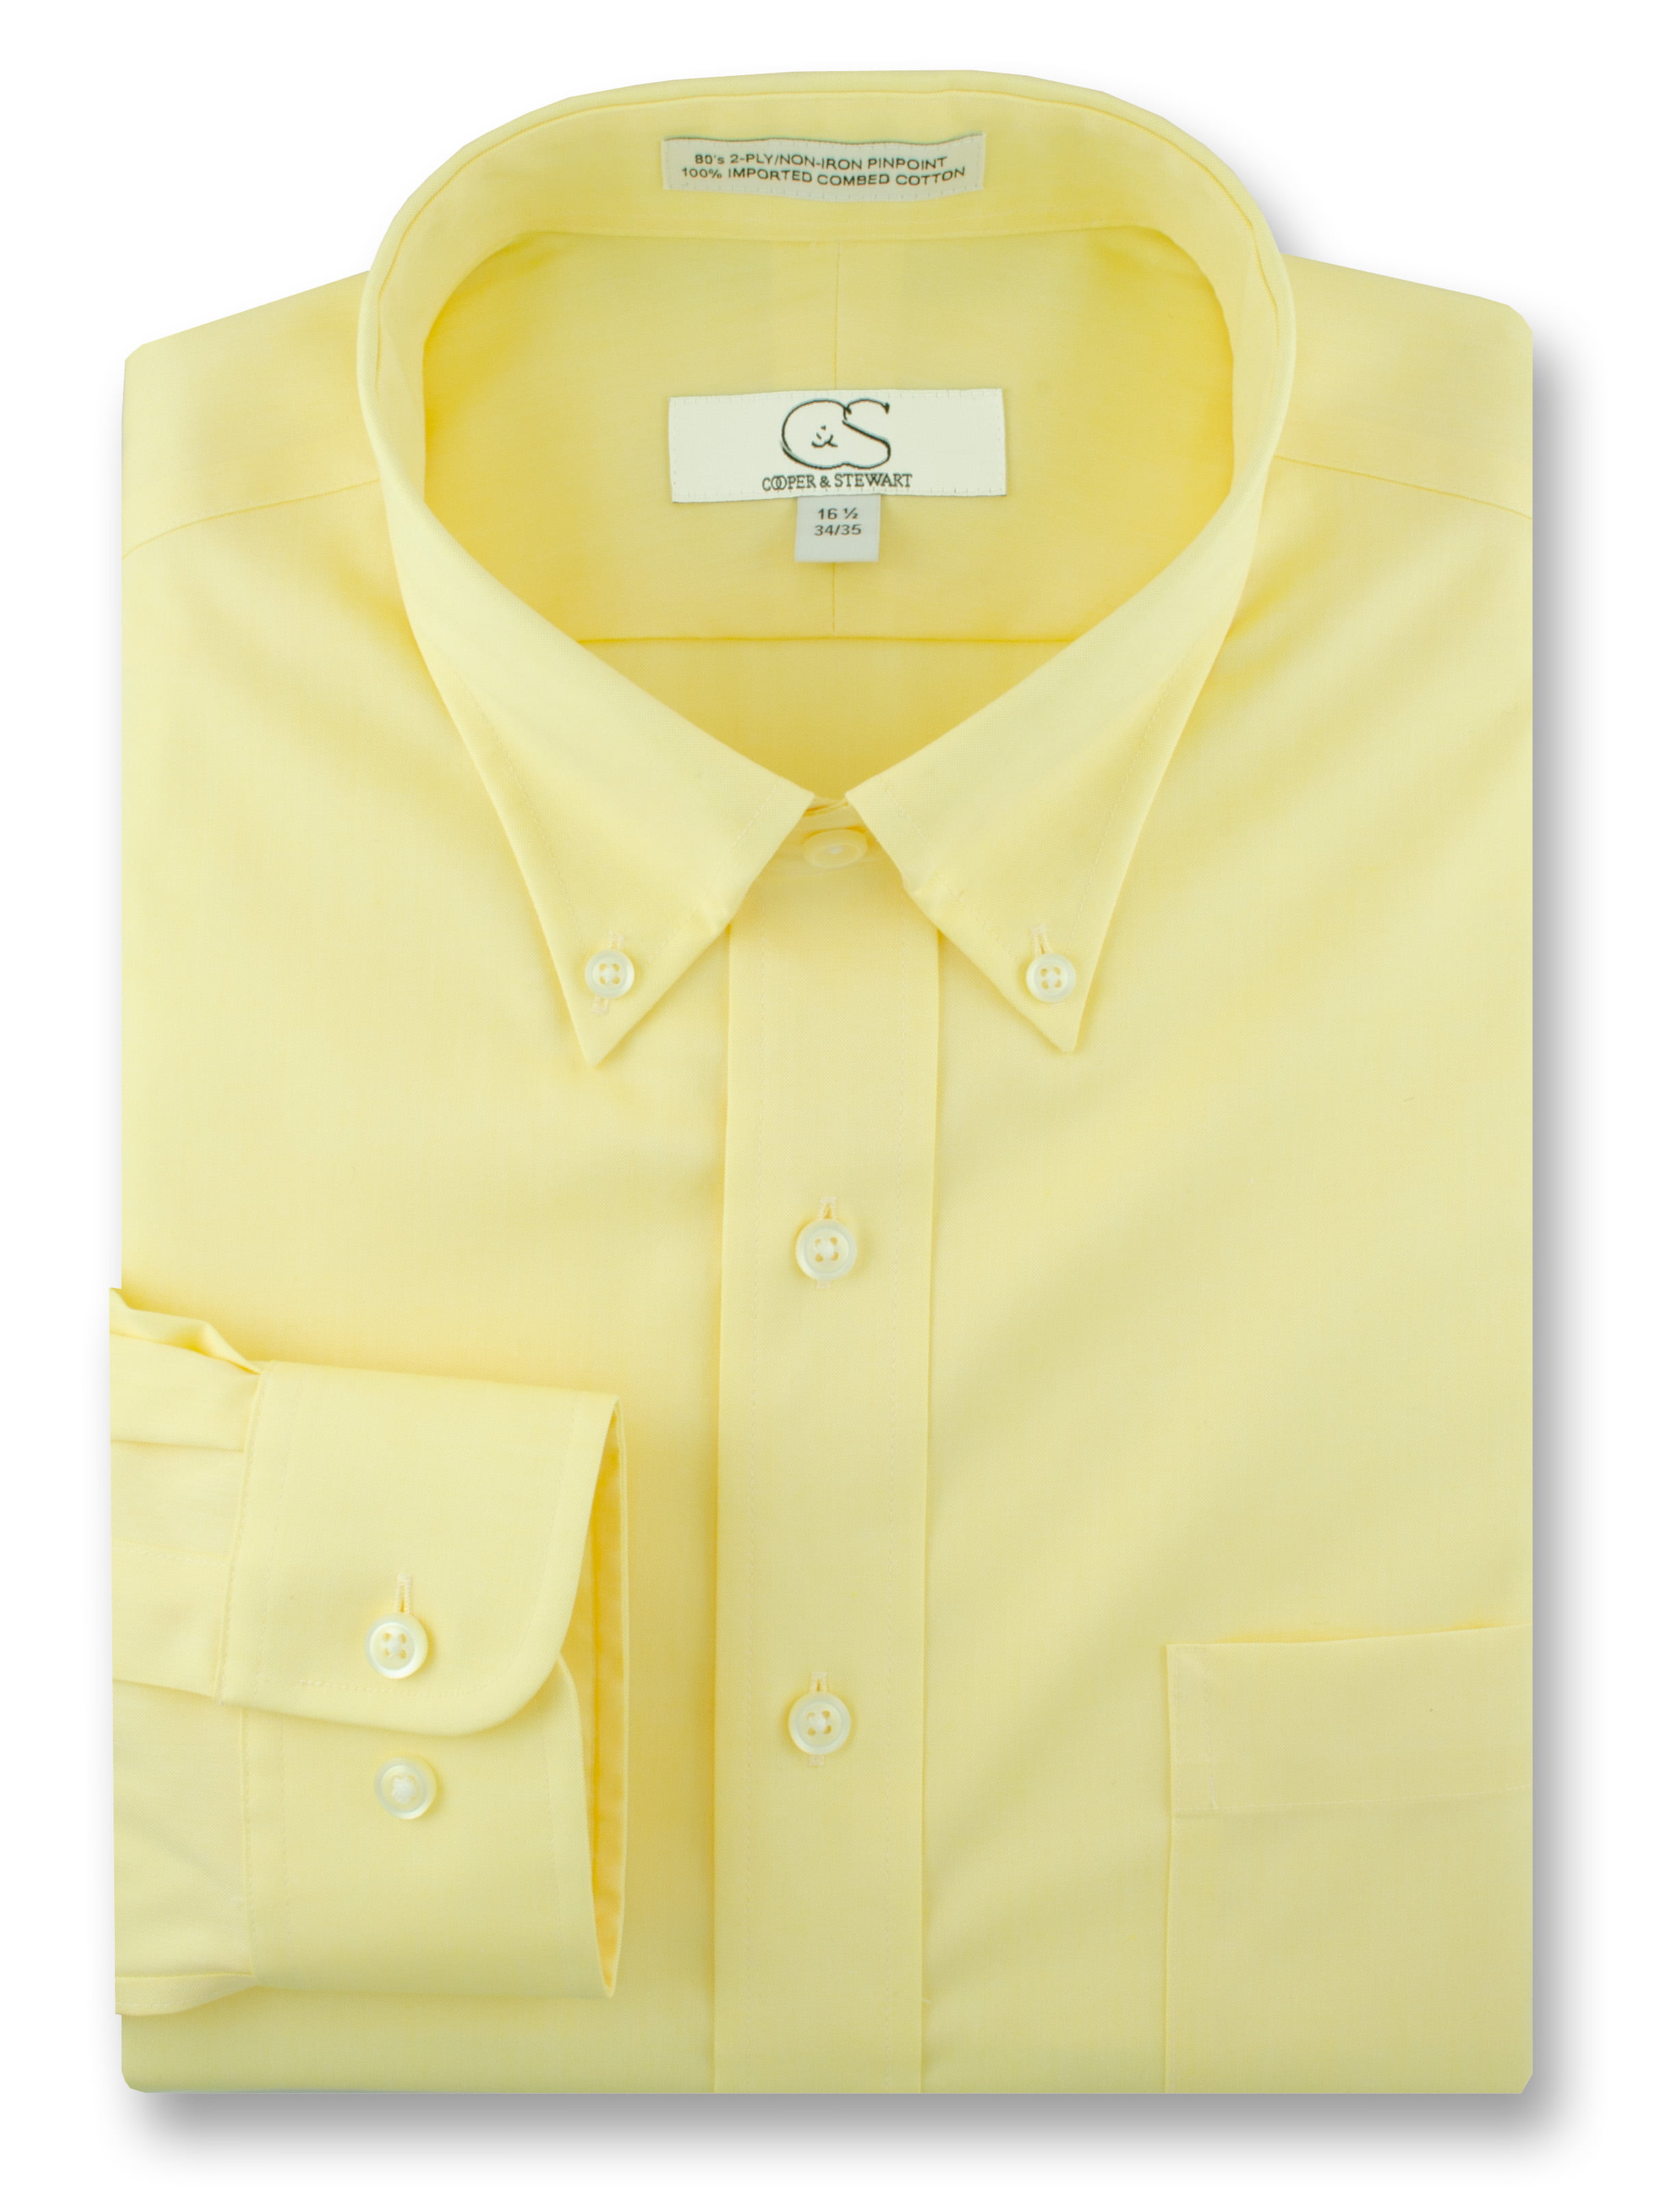 COOPER /& STEWART Big /& Tall Non-Iron Pinpoint Button-Down Collar Dress Shirt